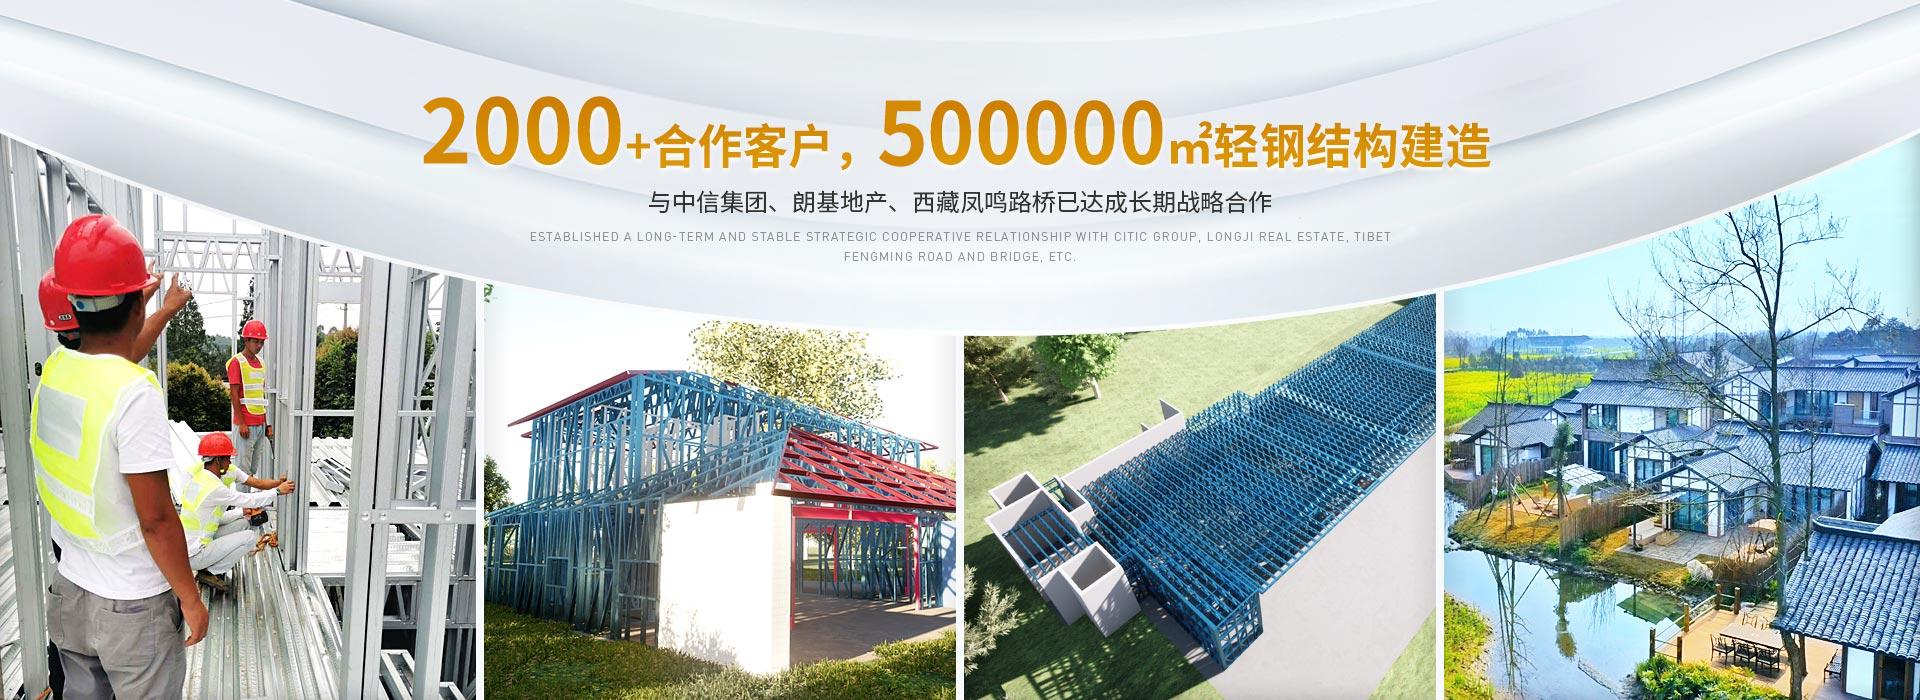 凯发网址直营
2000+合作客户,500000m²轻钢结构建造